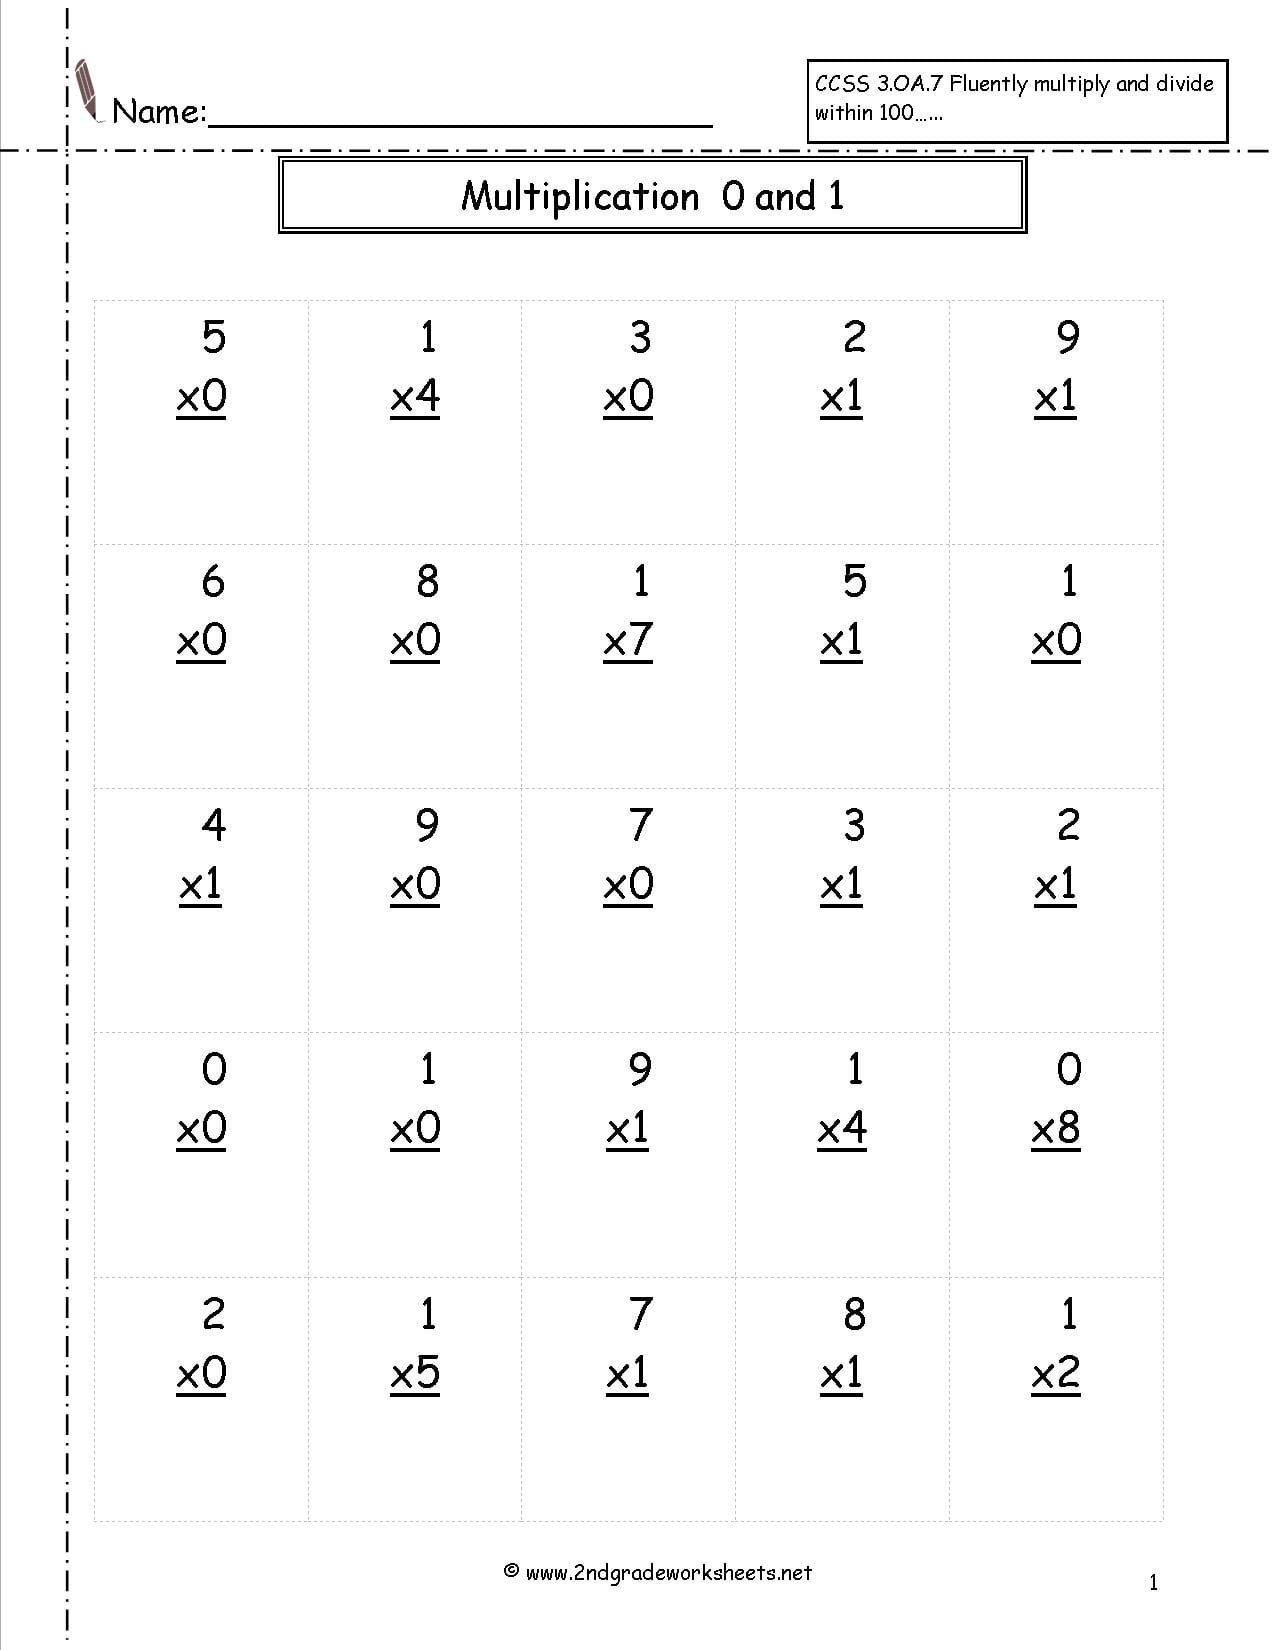 multiplication-worksheets-2nd-grade-printables-db-excel